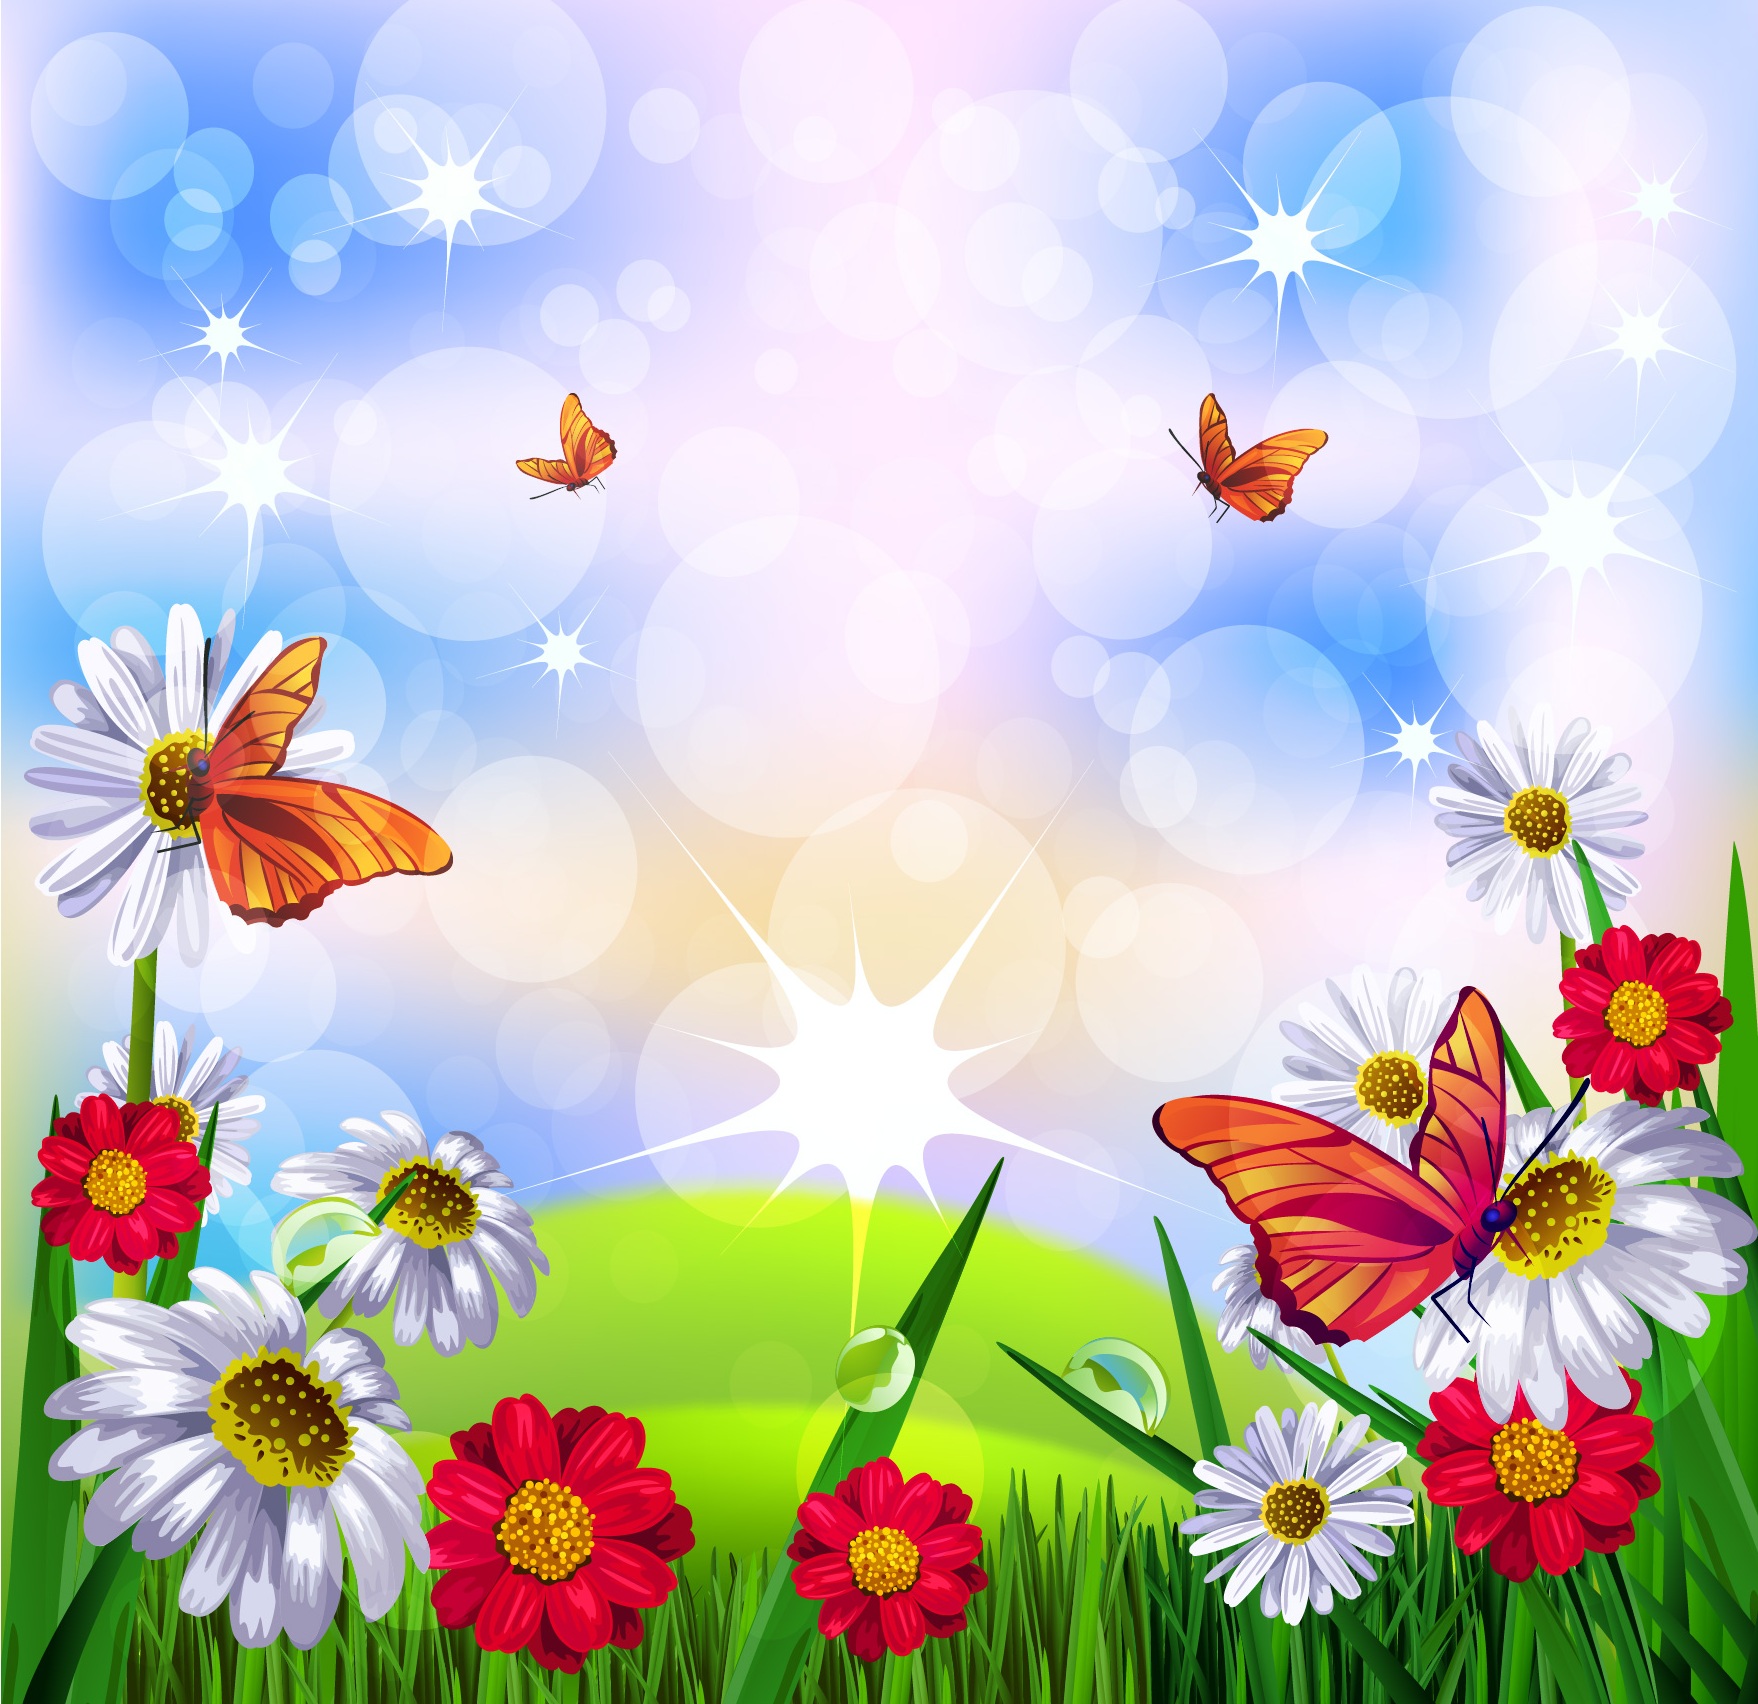 Детские картинки для оформления. Фон для садика. Летний фон. Красивый детский фон. Поляна с цветами и бабочками.